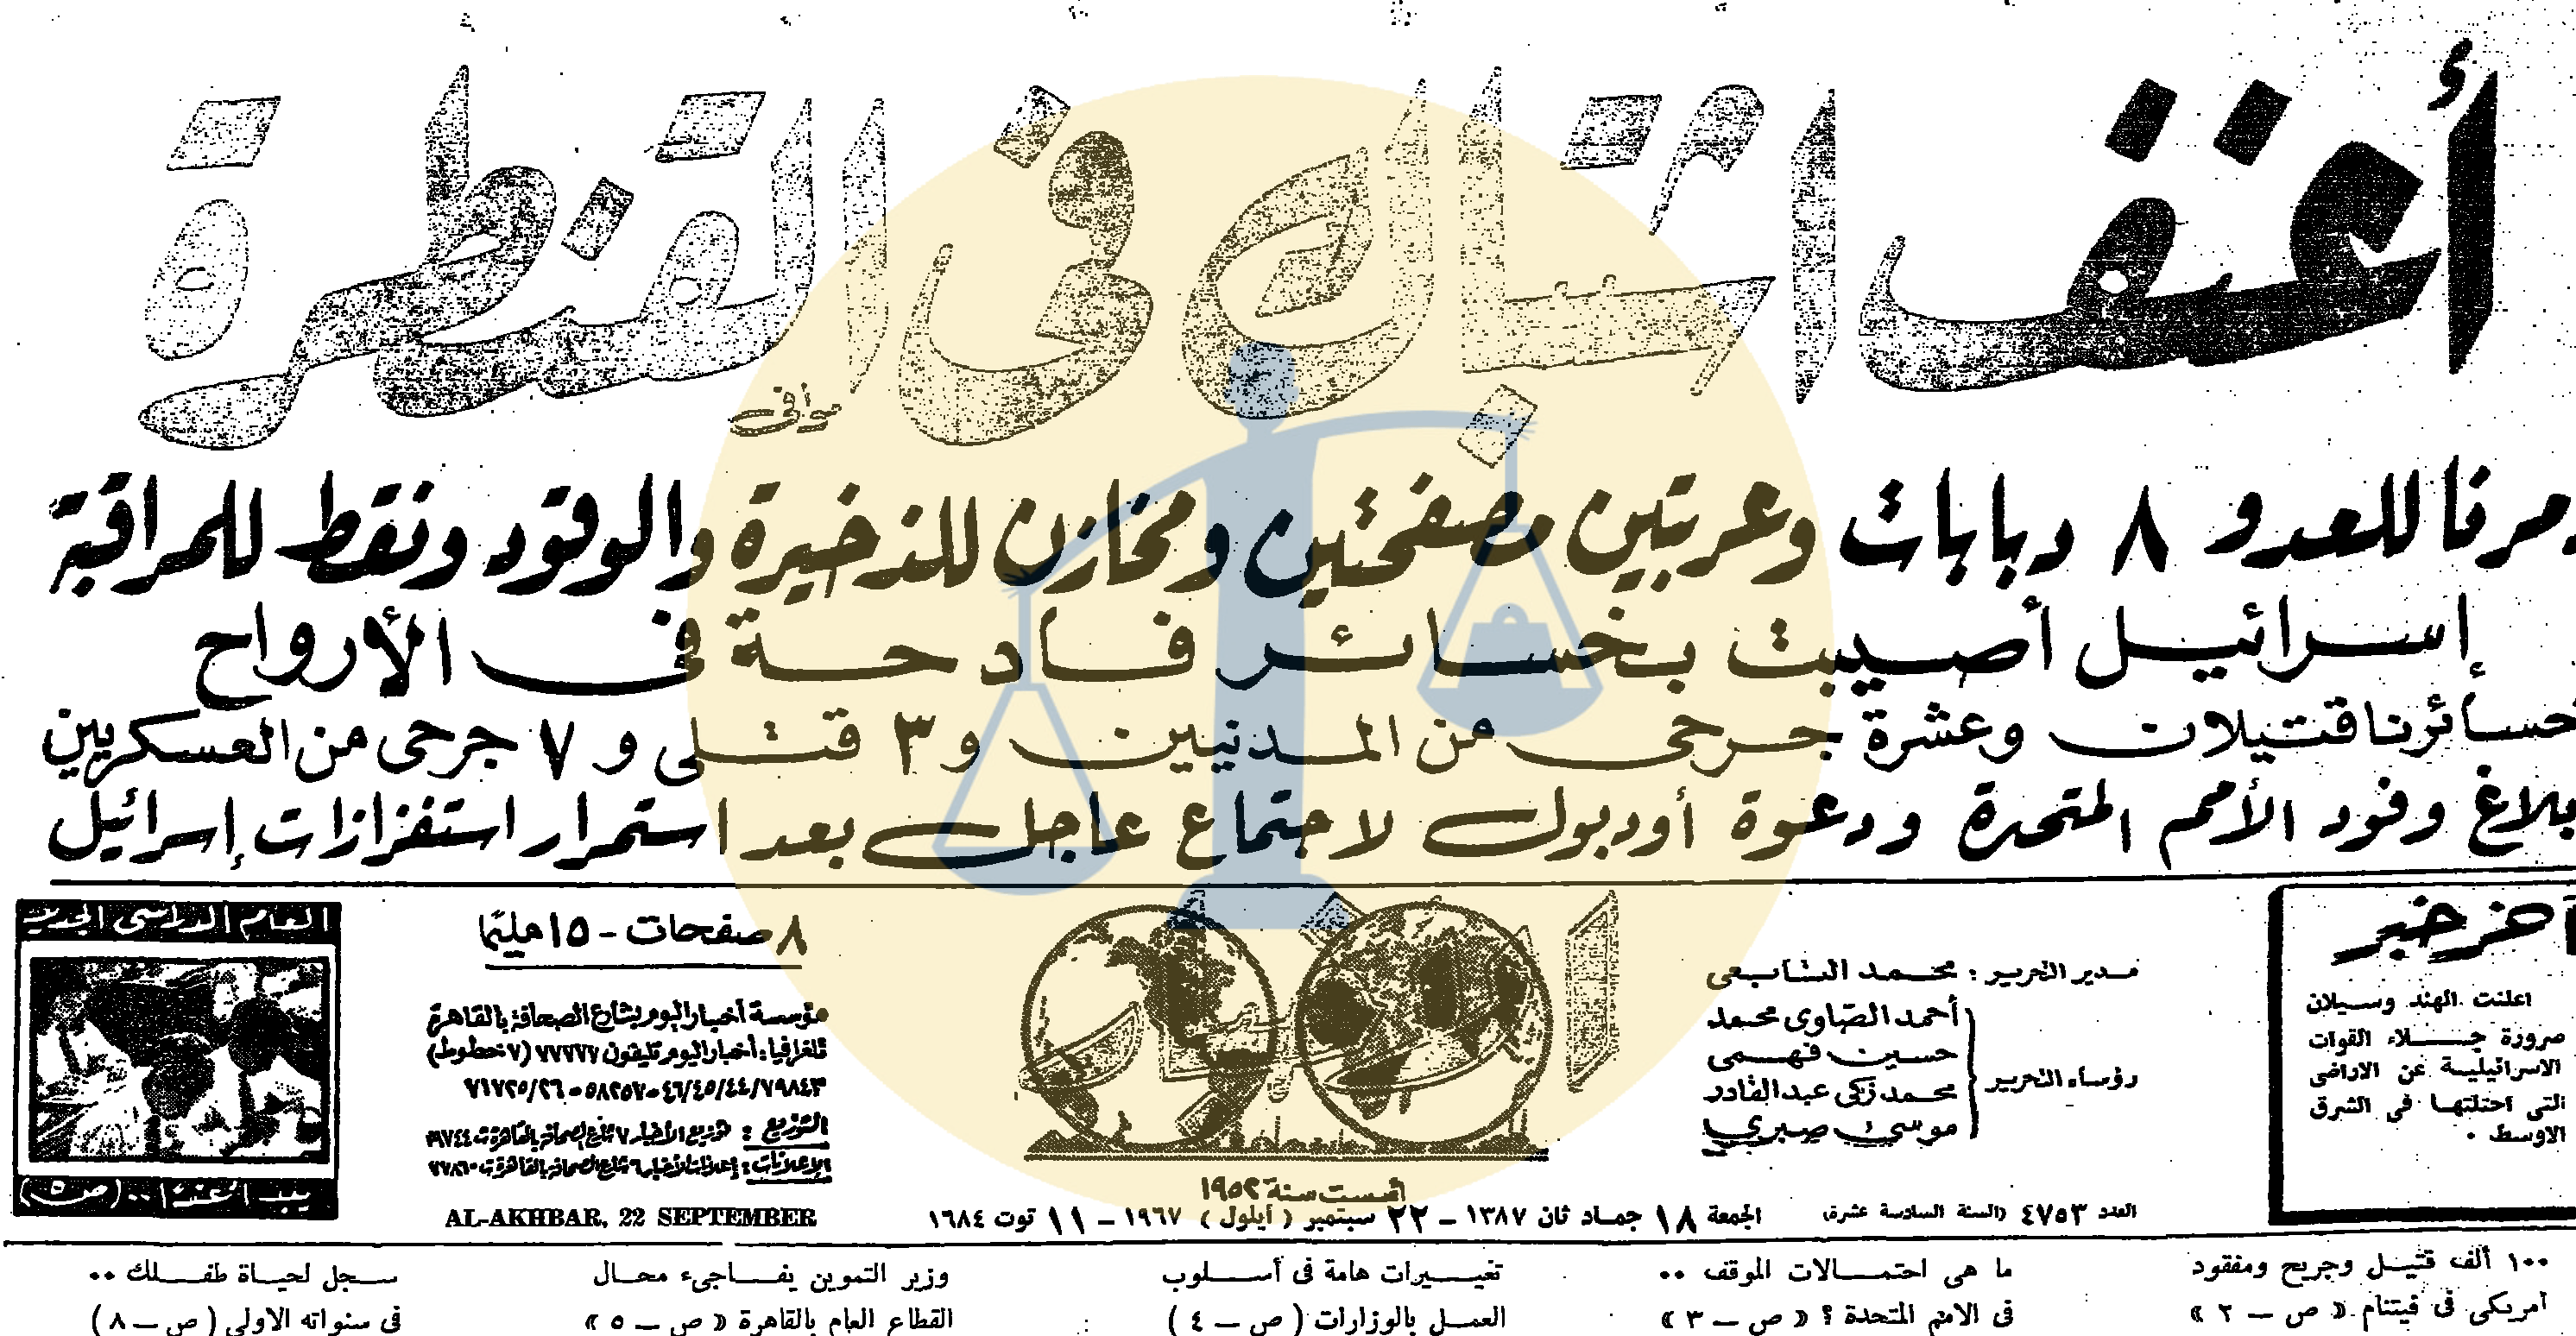 آخر خبر عسكري قبل رفع الرقابة من على الصحف إلا فيما يتعلق بالأخبار العسكرية - 22 سبتمبر 1967